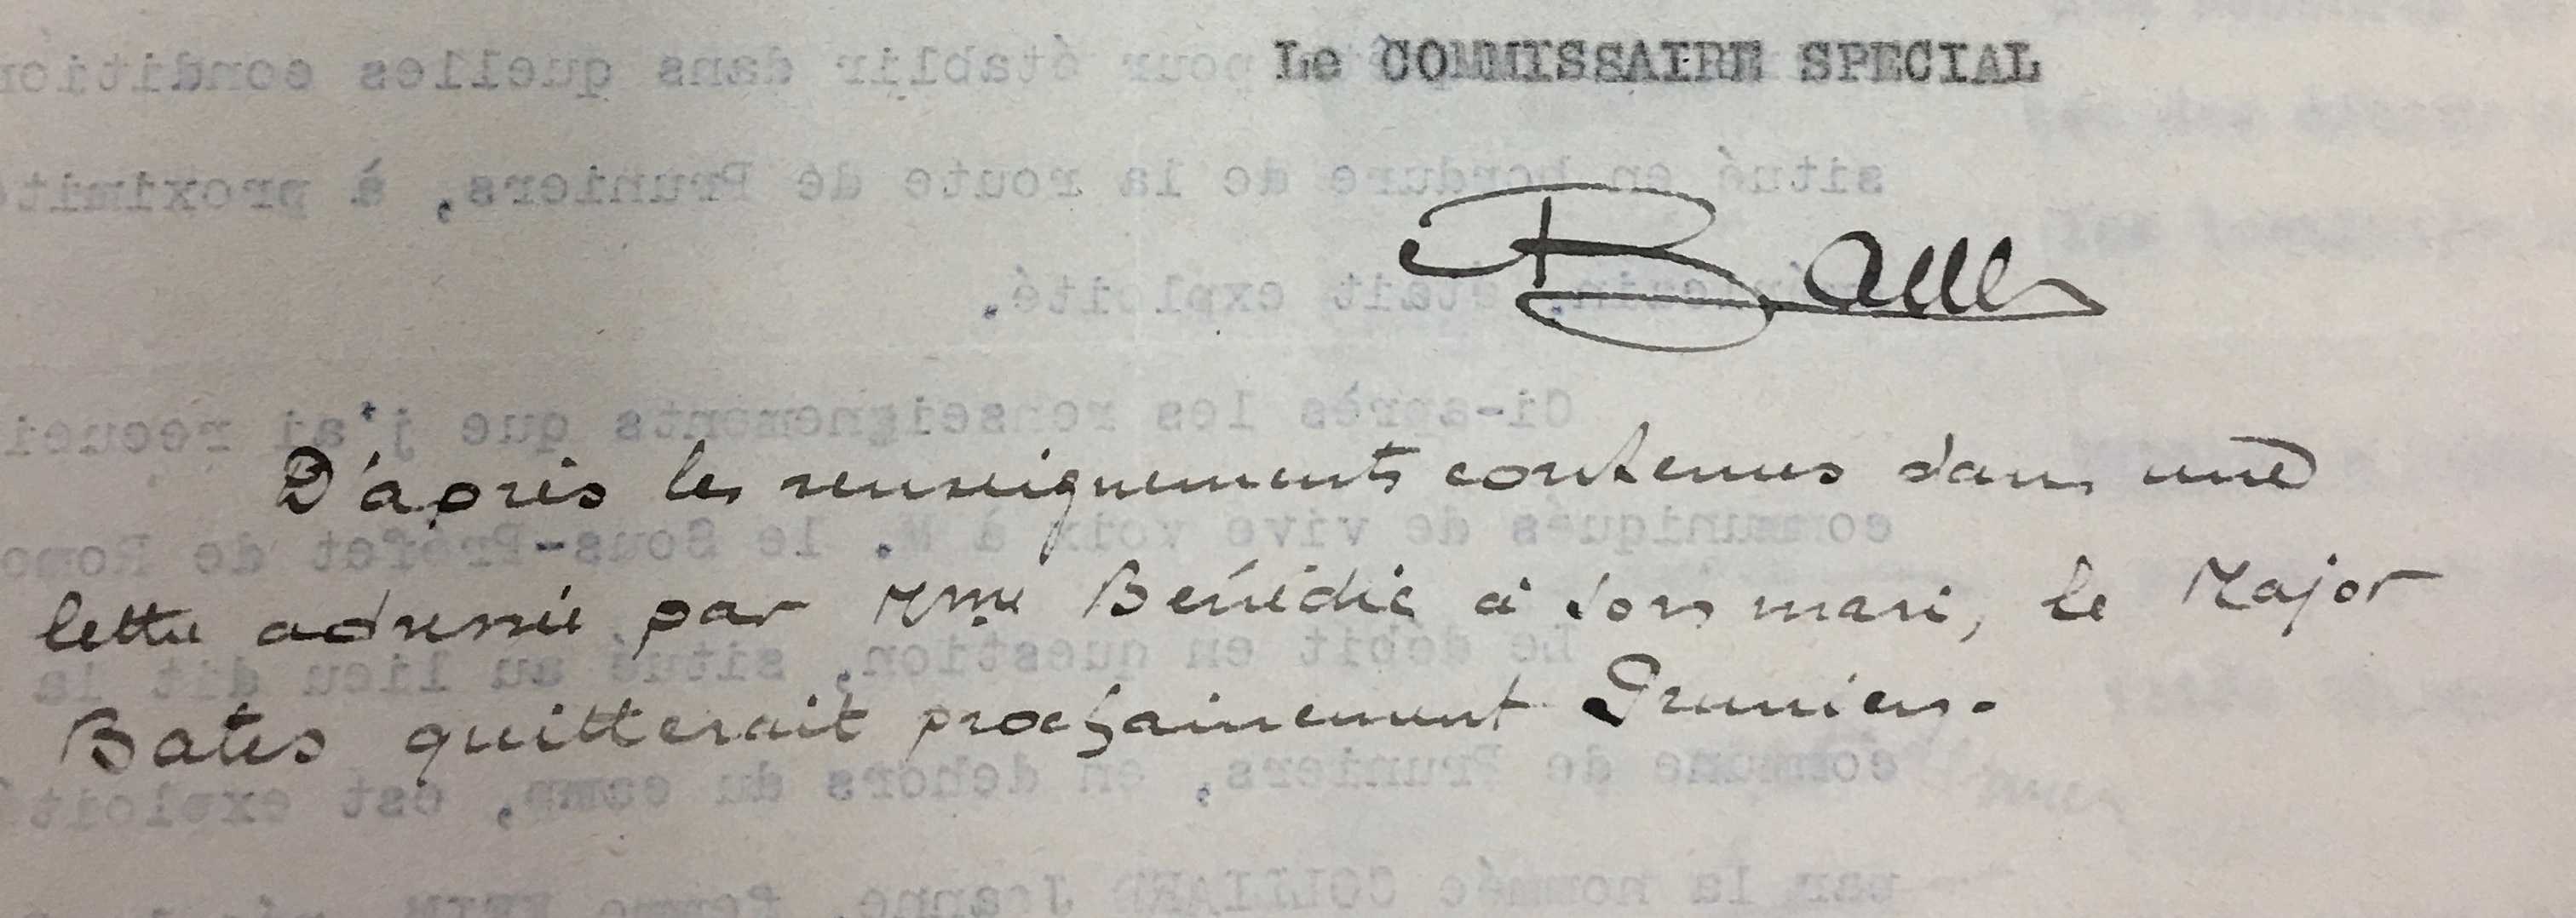 Manuscrit du Commissaire Spécial Bauer. (Source, ADLC).